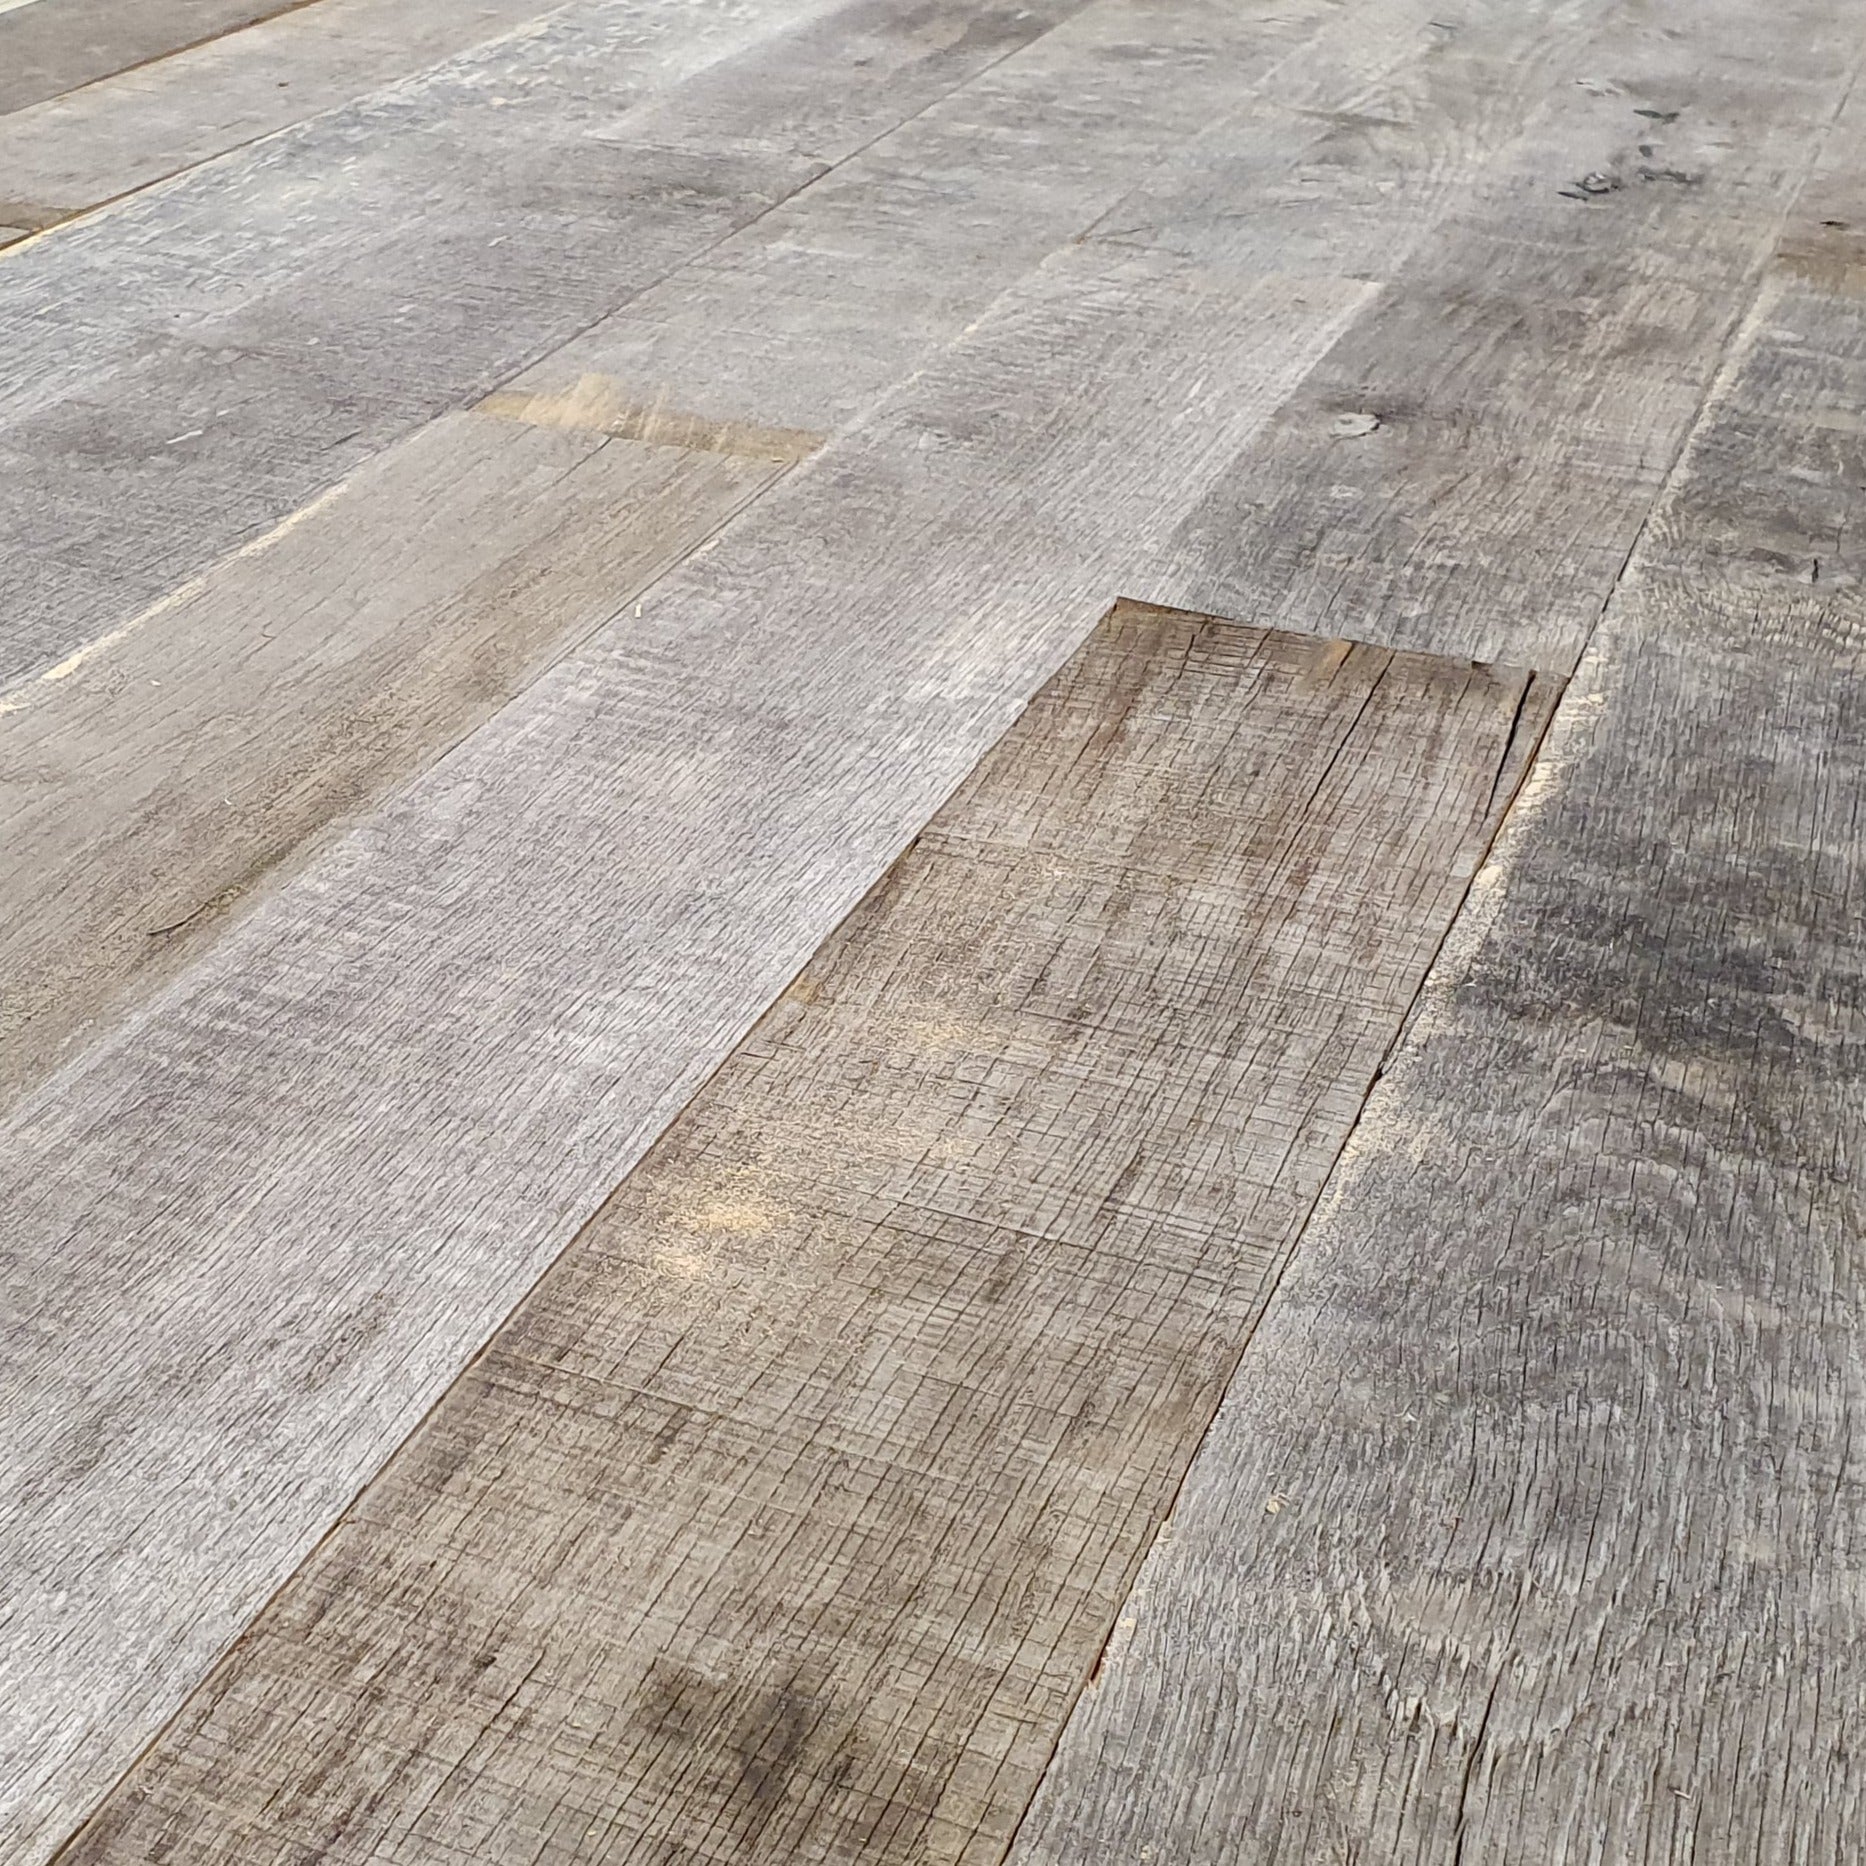 Herontdek de schoonheid van gerecycled hout: deze Europese Eiken planken bieden een authentieke "Barnwood" uitstraling.